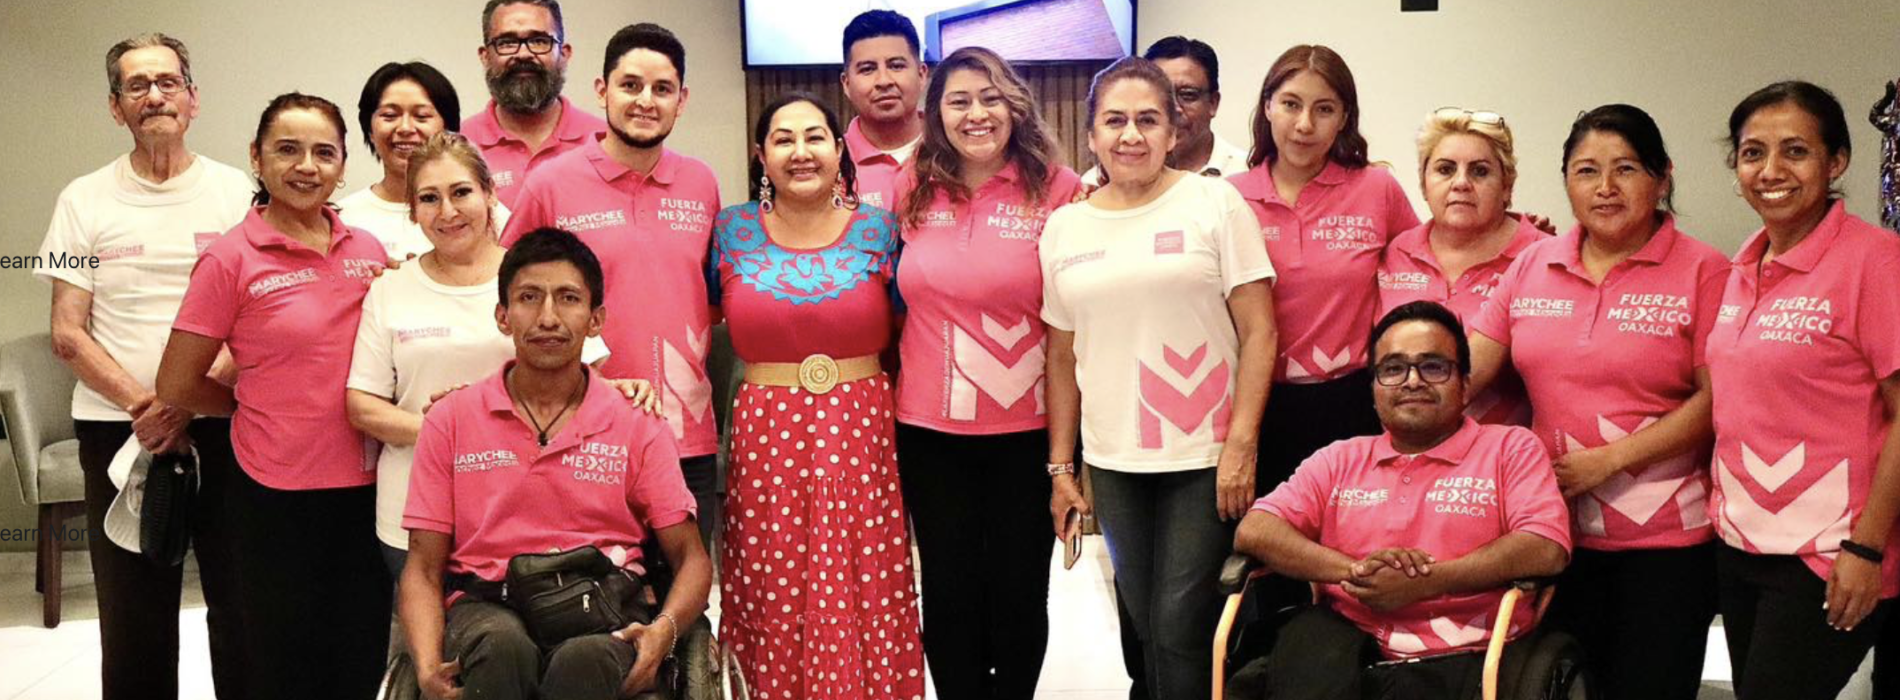 Marycheé Sánchez Prioriza la Salud en su Propuesta para Huajuapan